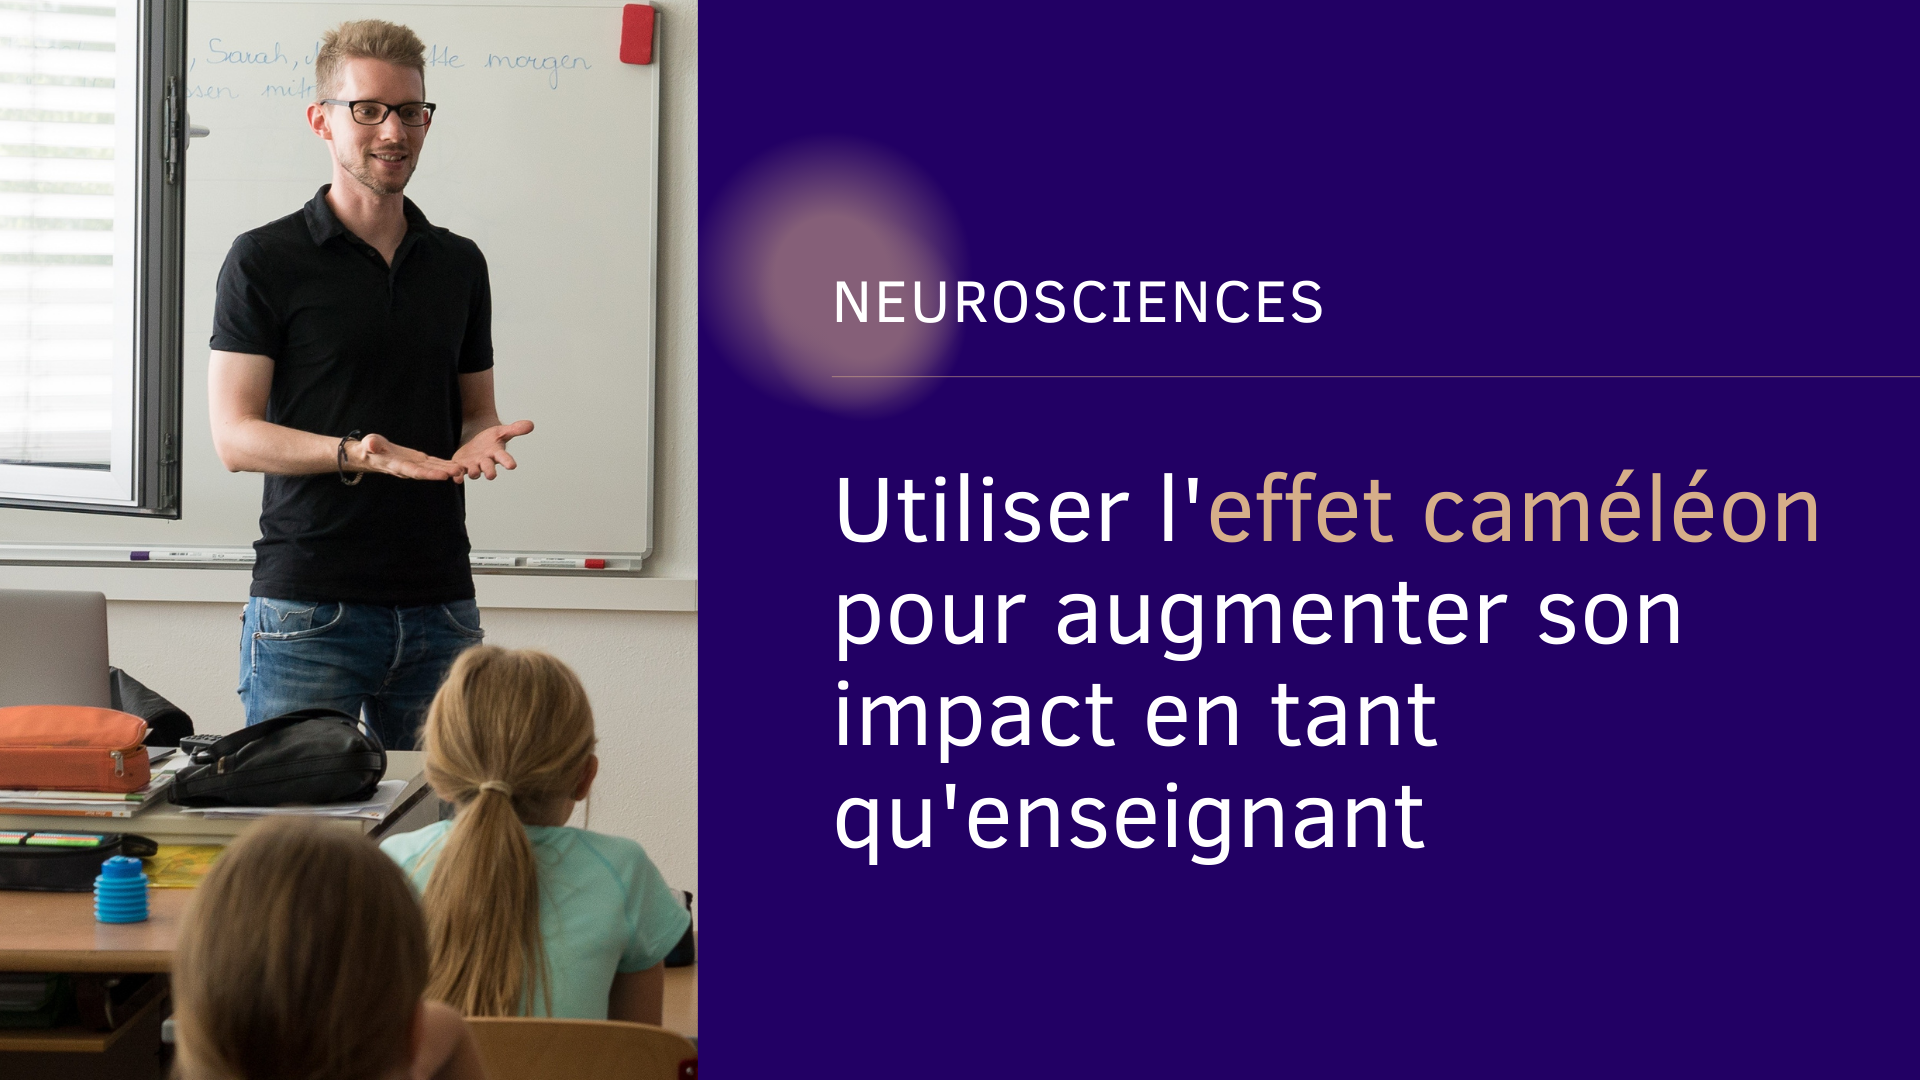 Neurosciences utiliser l'effet caméléon pour augmenter son impact en tant qu'enseignant